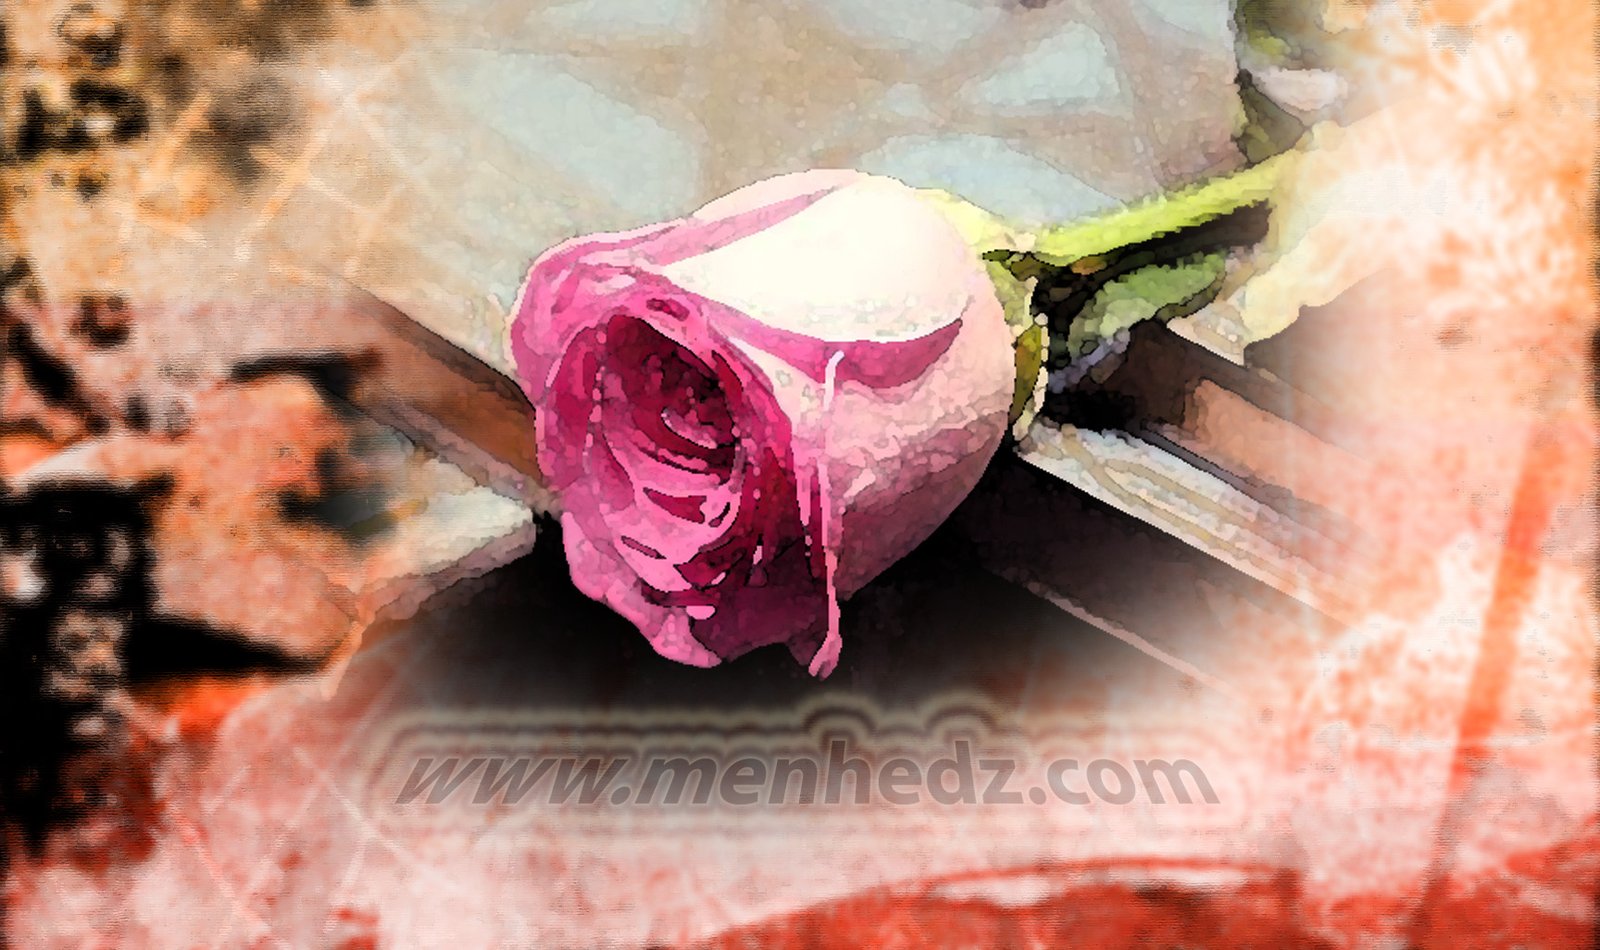 islamski brak, ruža